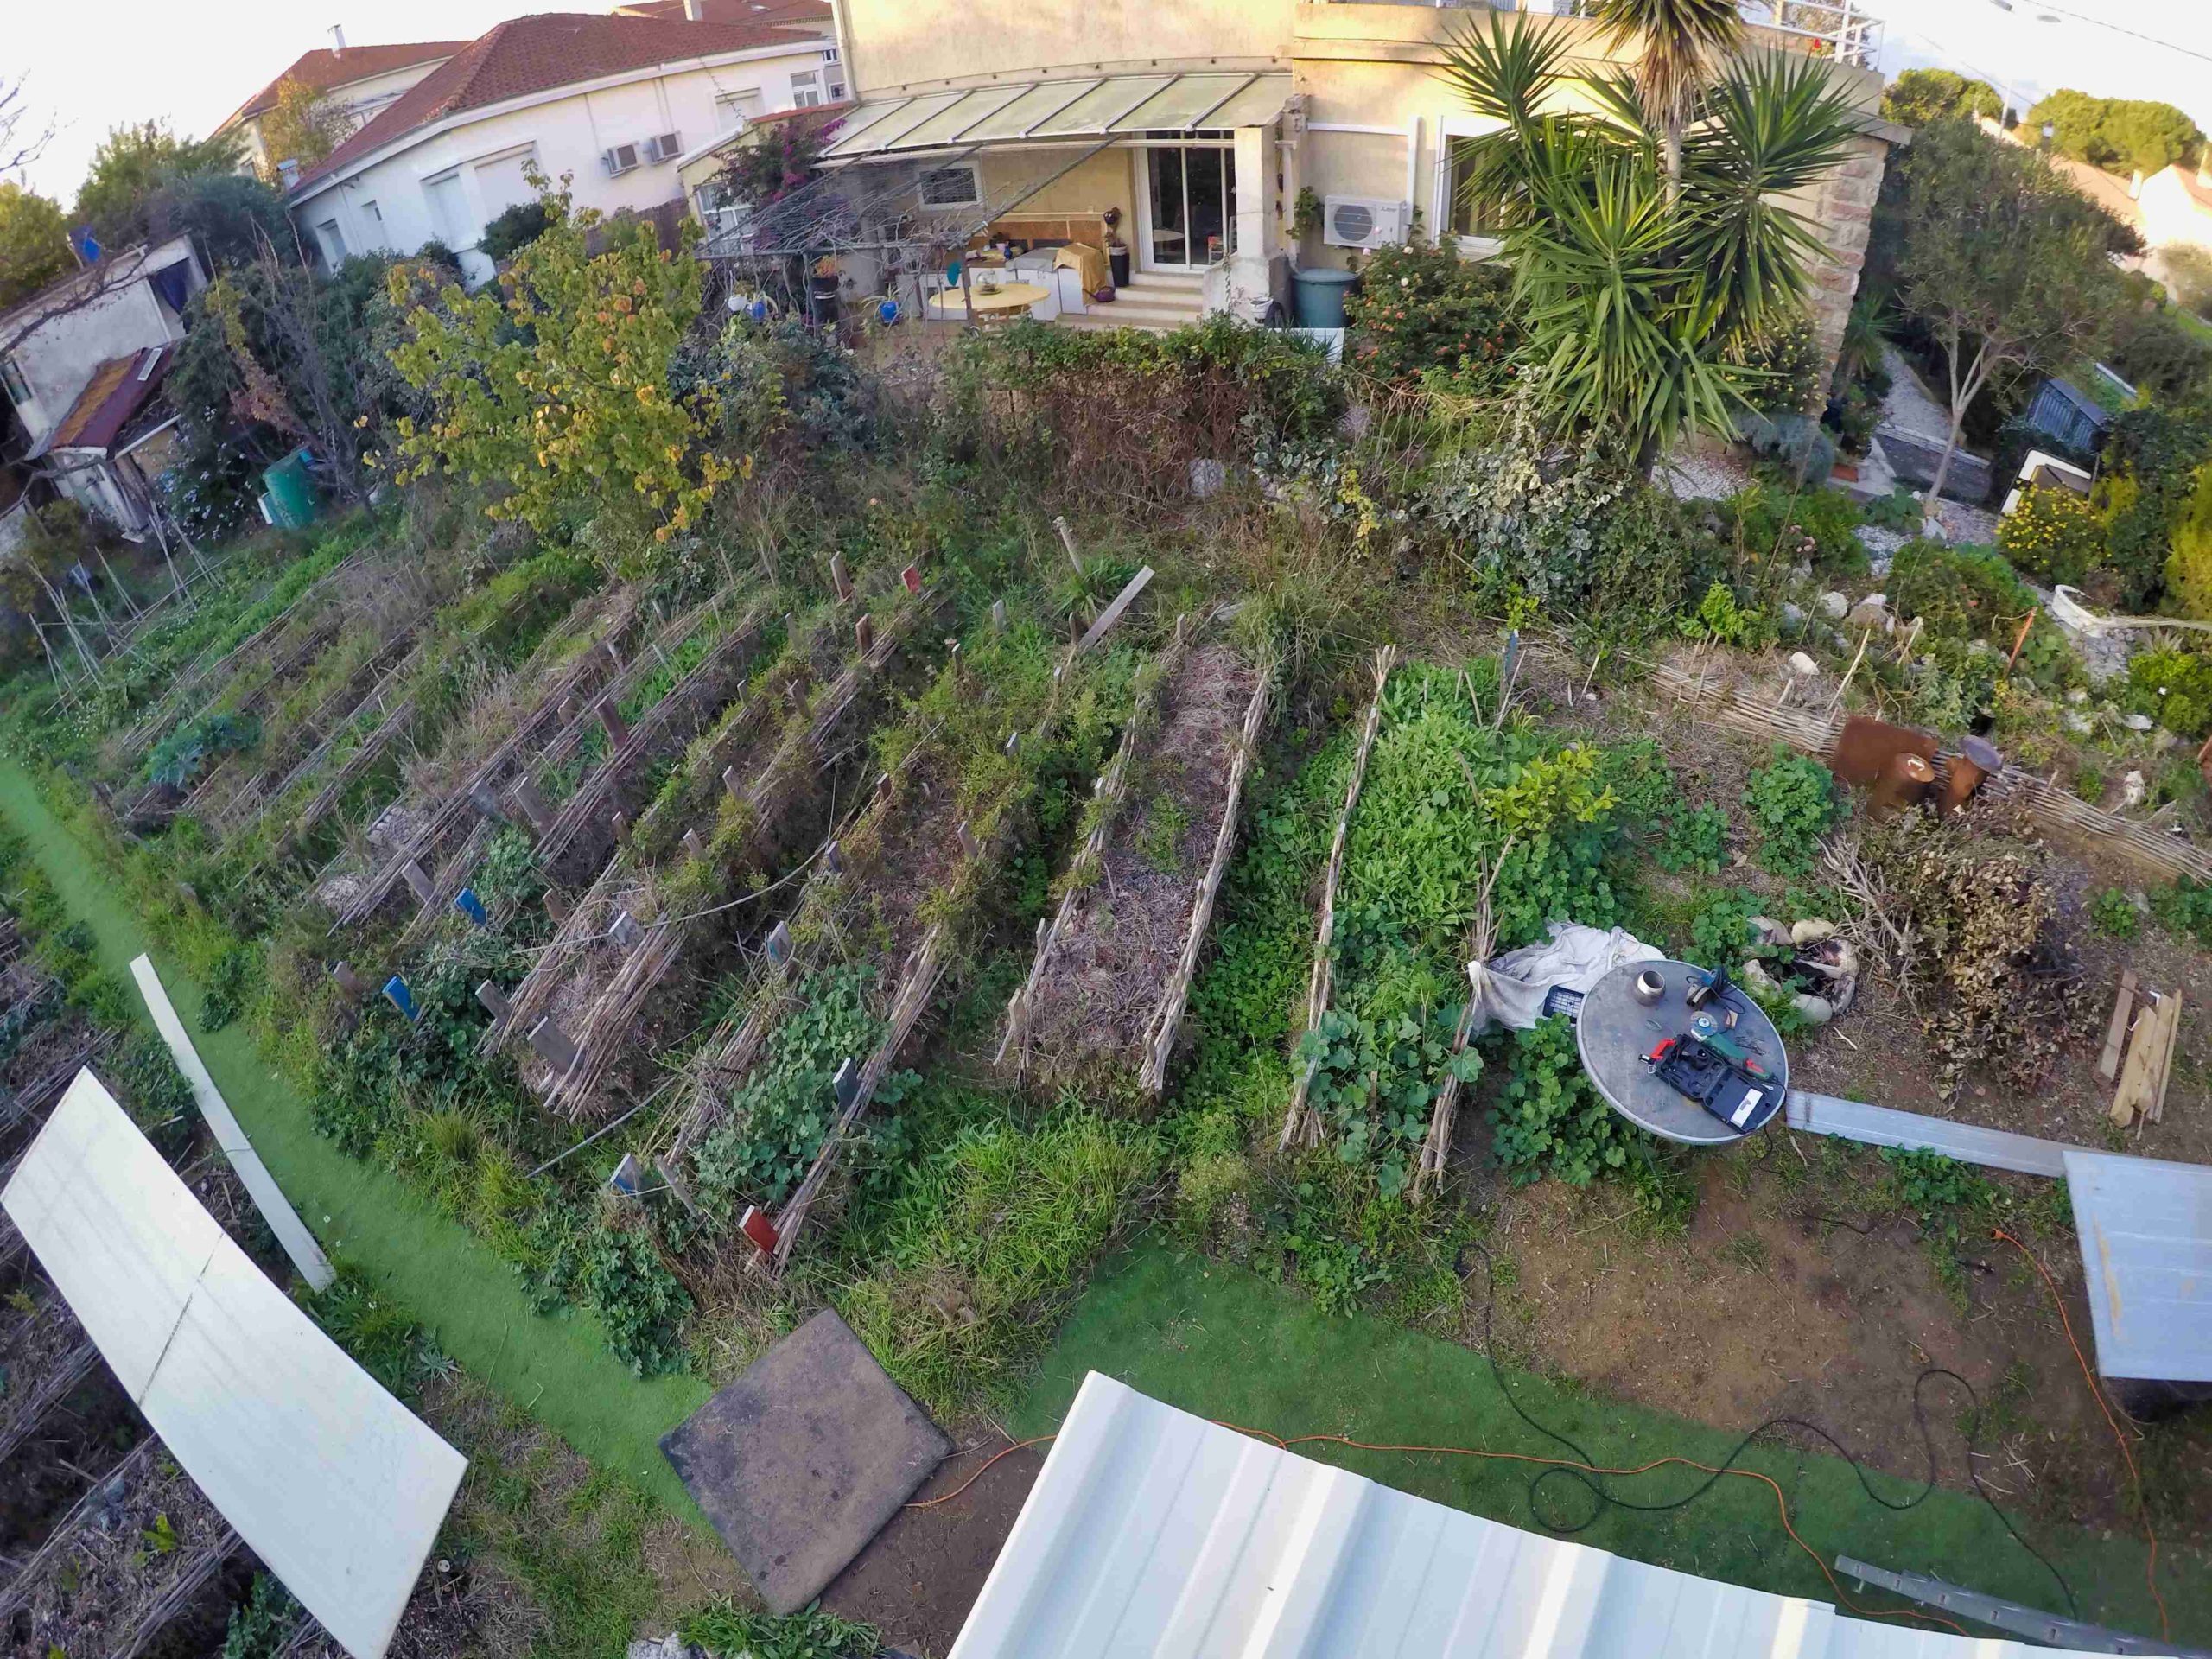 photo prise sur un toit de maison montrant comment le sol des cultures d'un jardin partagé à Béziers sont couvertes